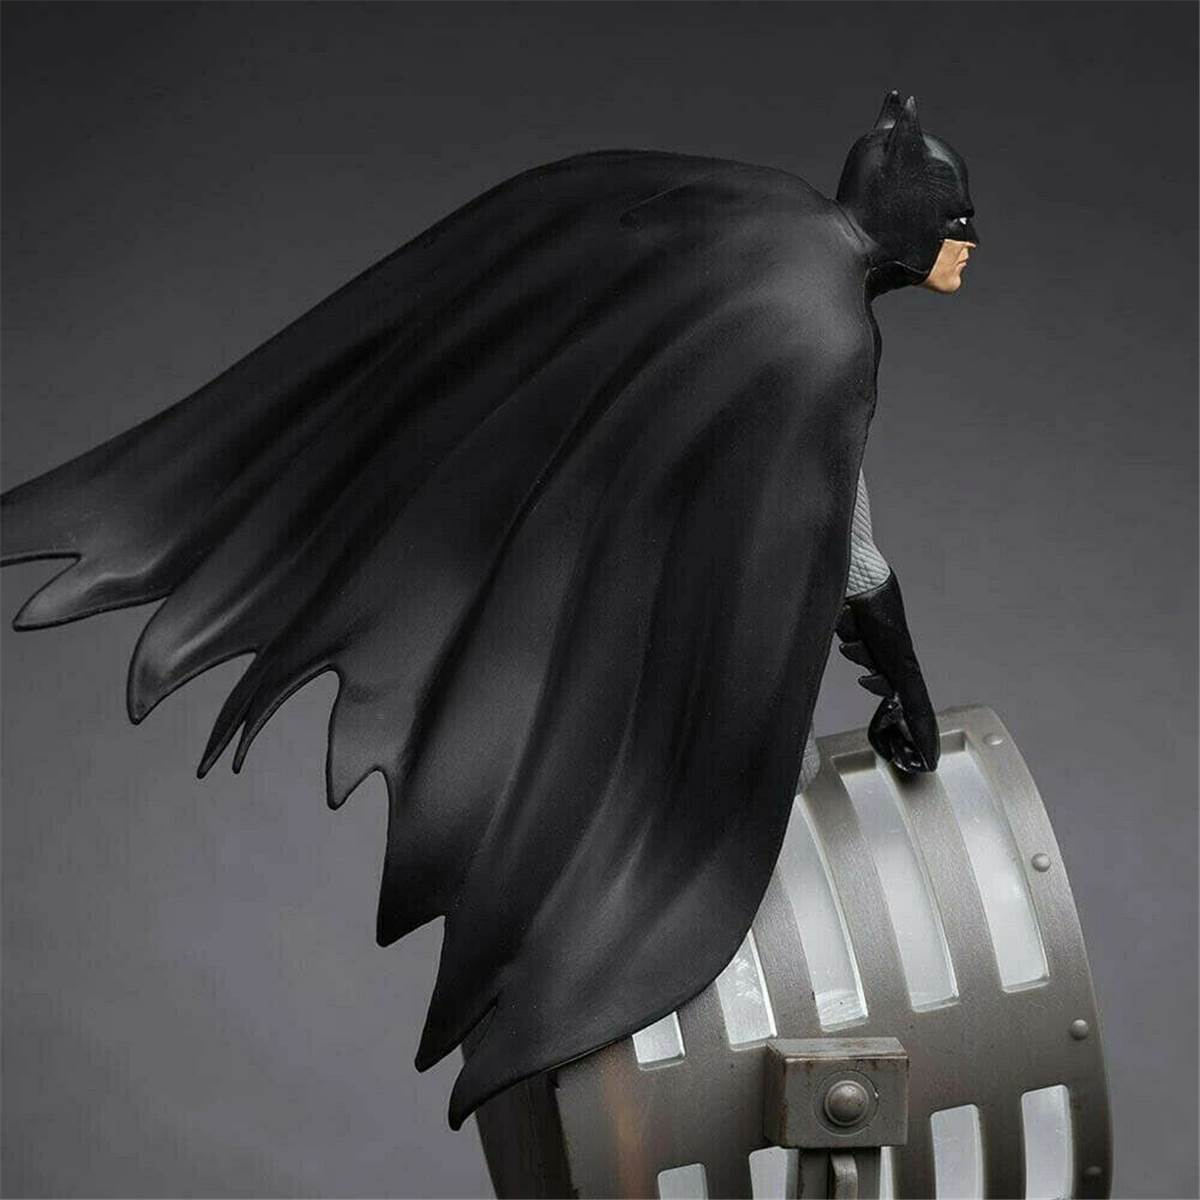 statue-batman-goodiespop